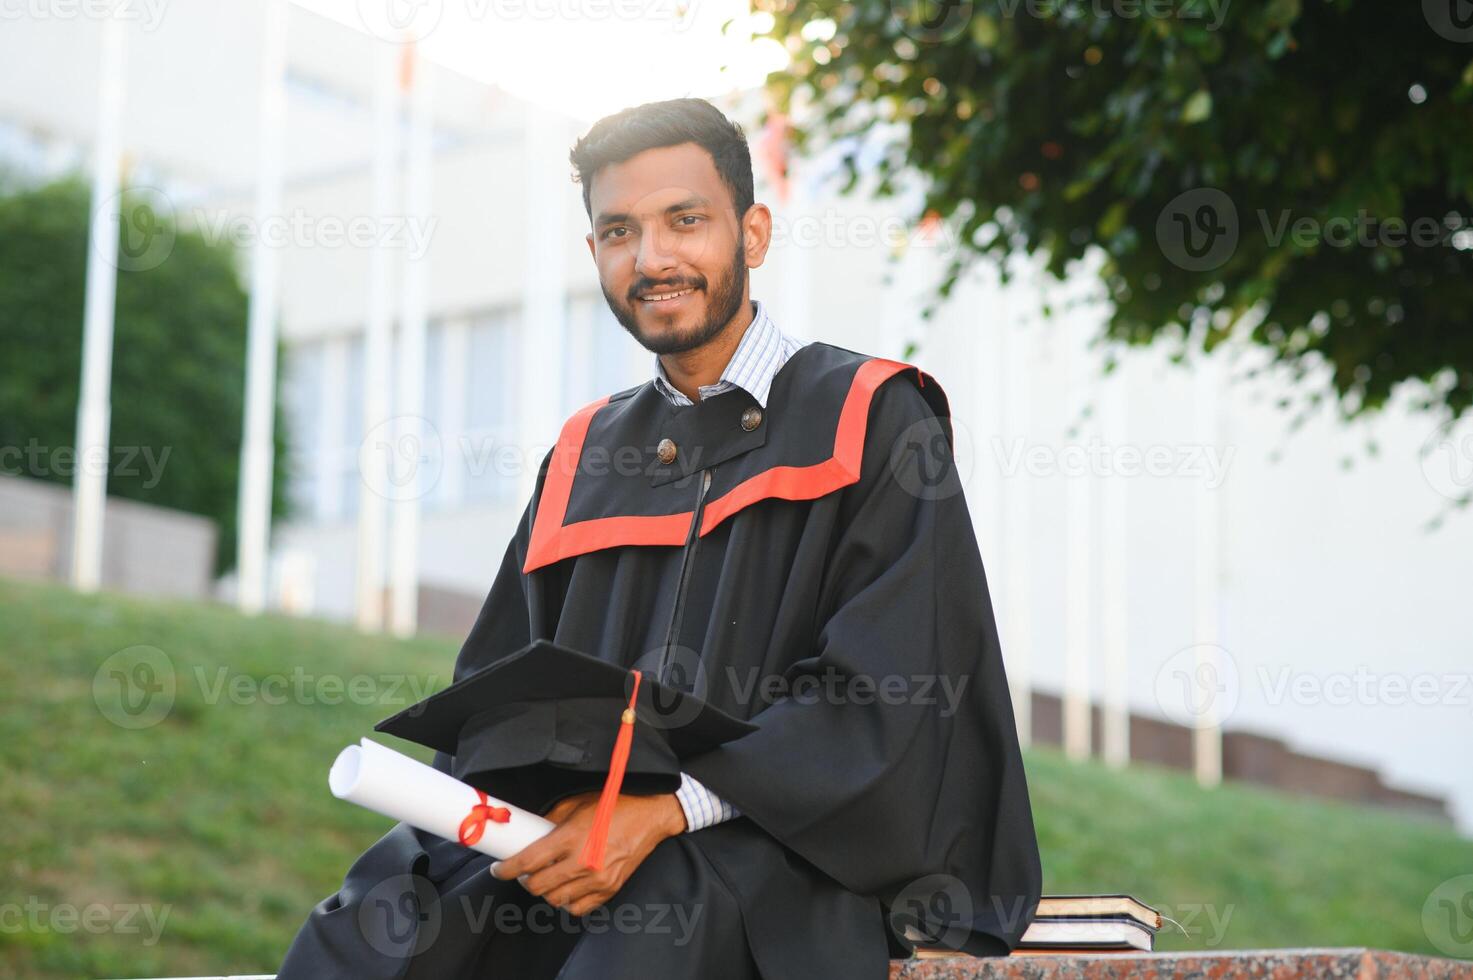 Ausbildung, Abschluss und Menschen Konzept - - glücklich indisch männlich Absolvent Student. foto